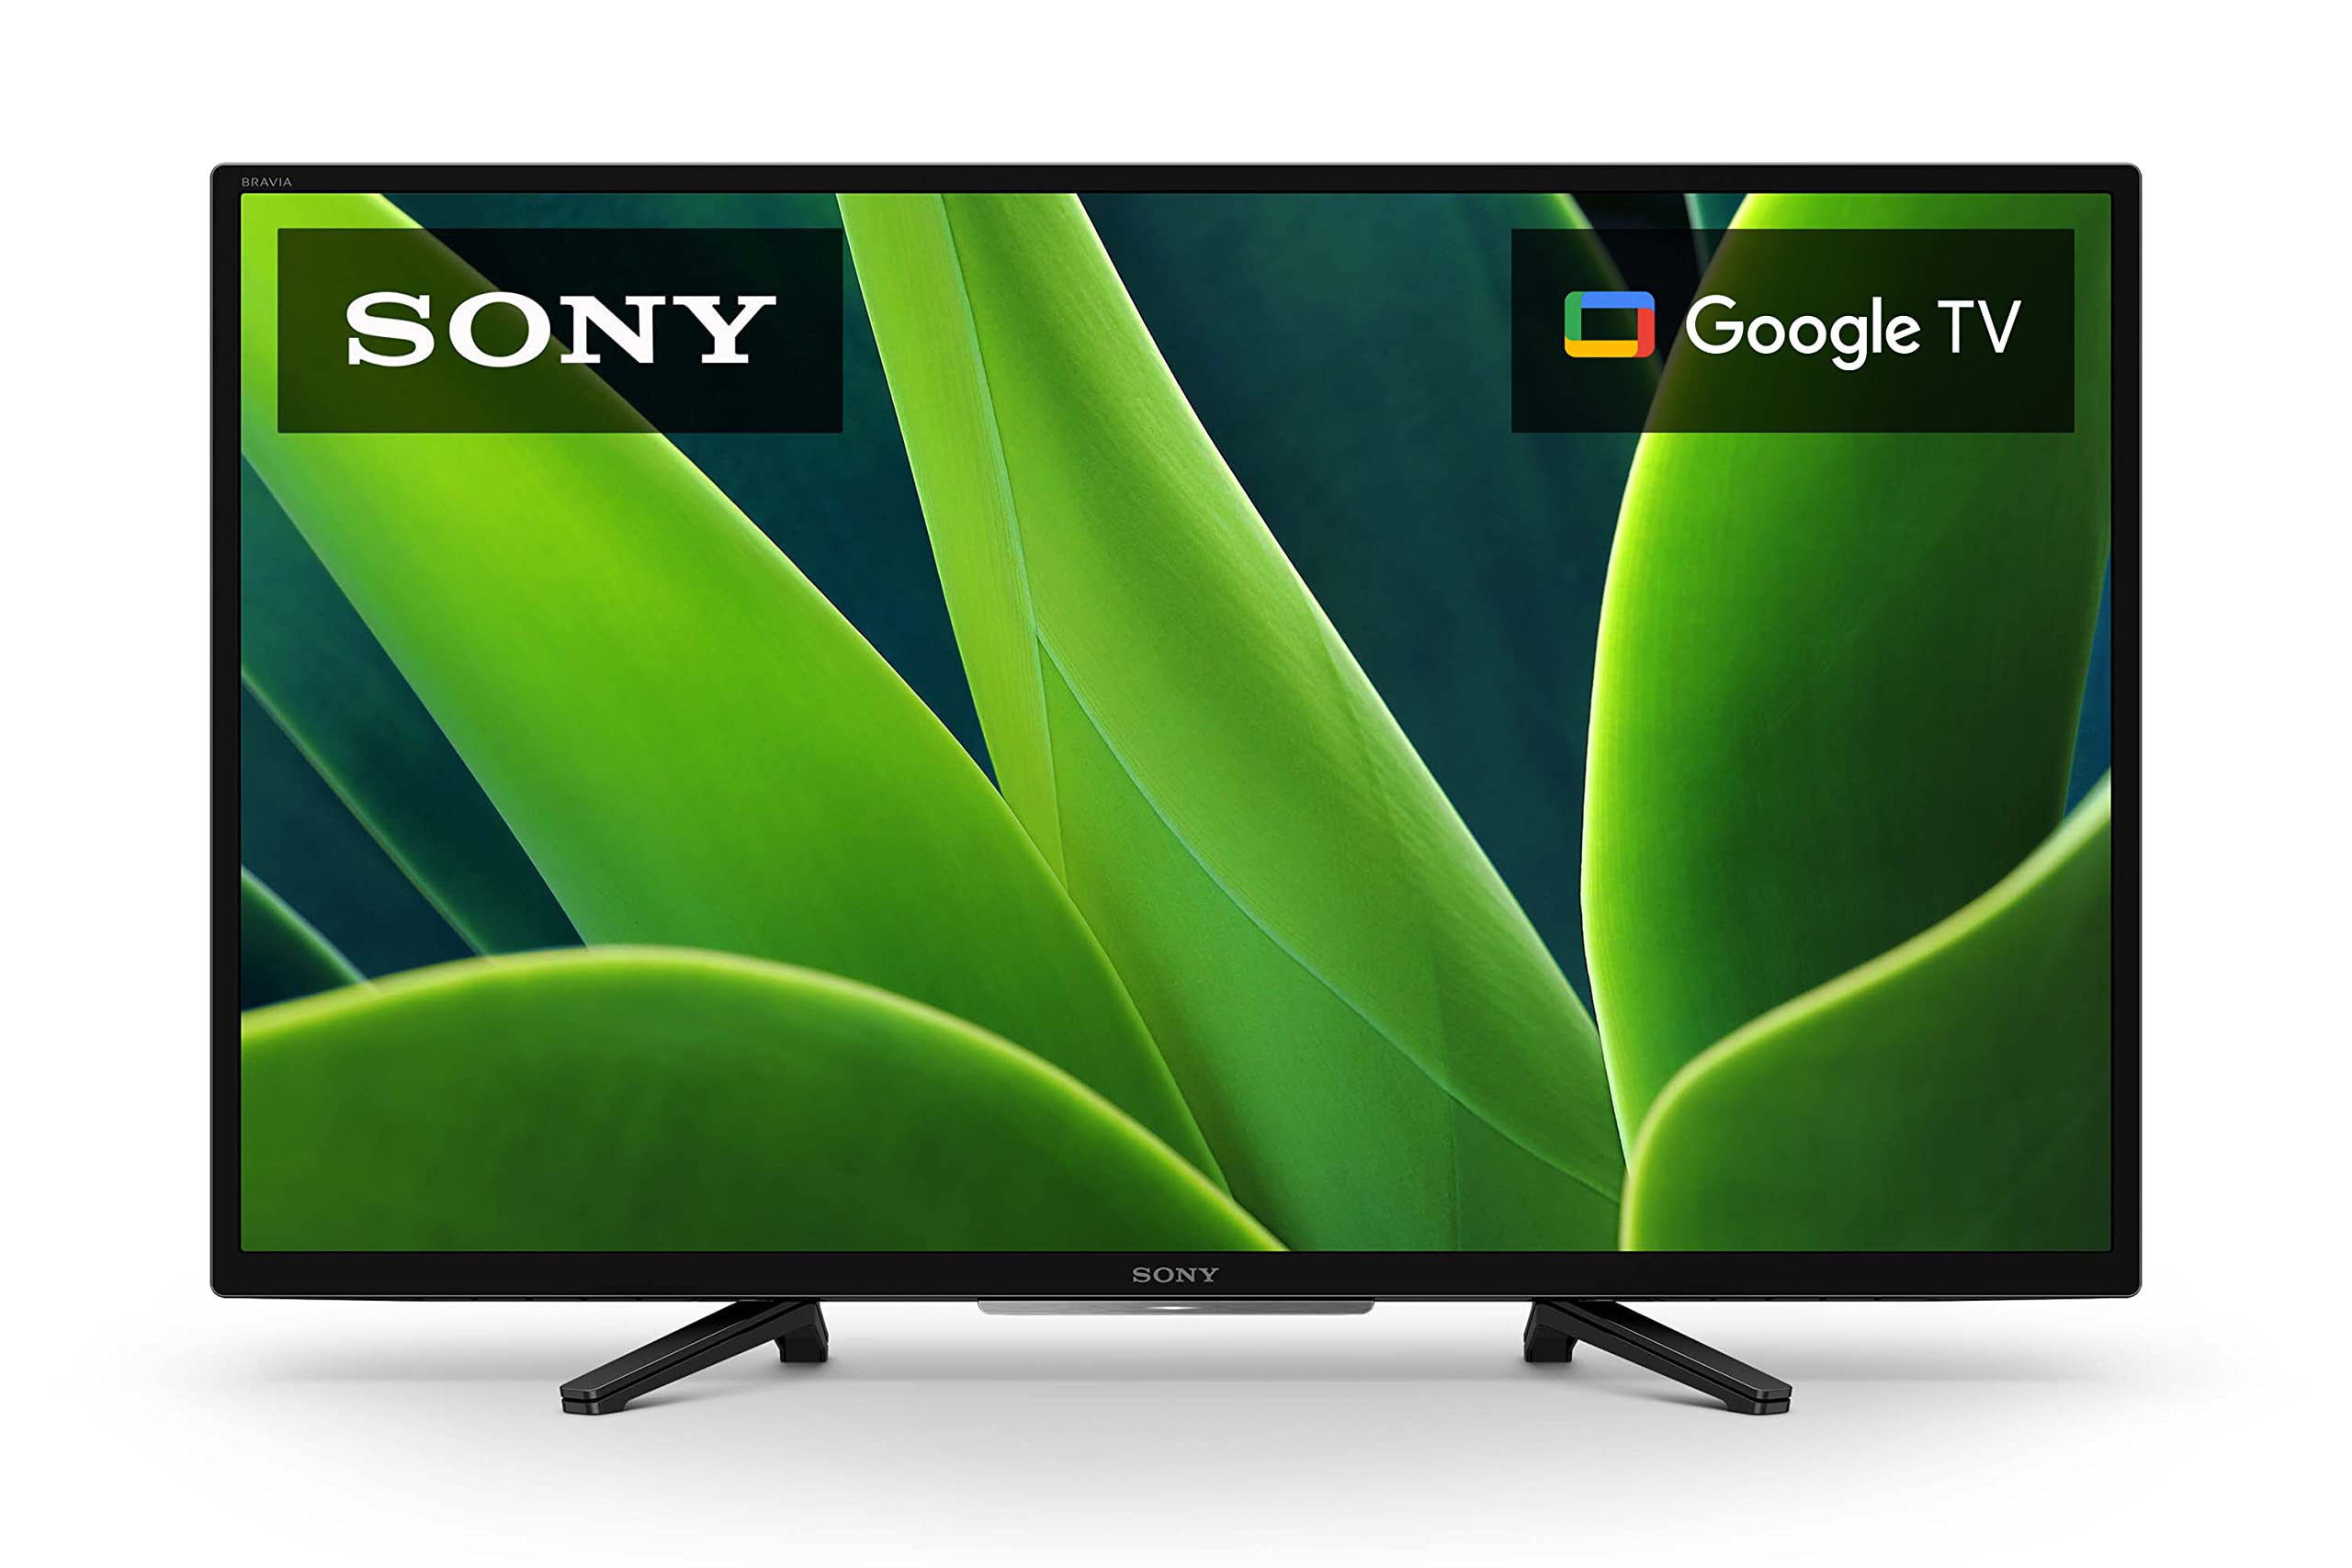 Sony Televisor LED HDR de 32 pulgadas y 720p HD Serie W830K con Google TV y Google Assistant-Modelo 2022